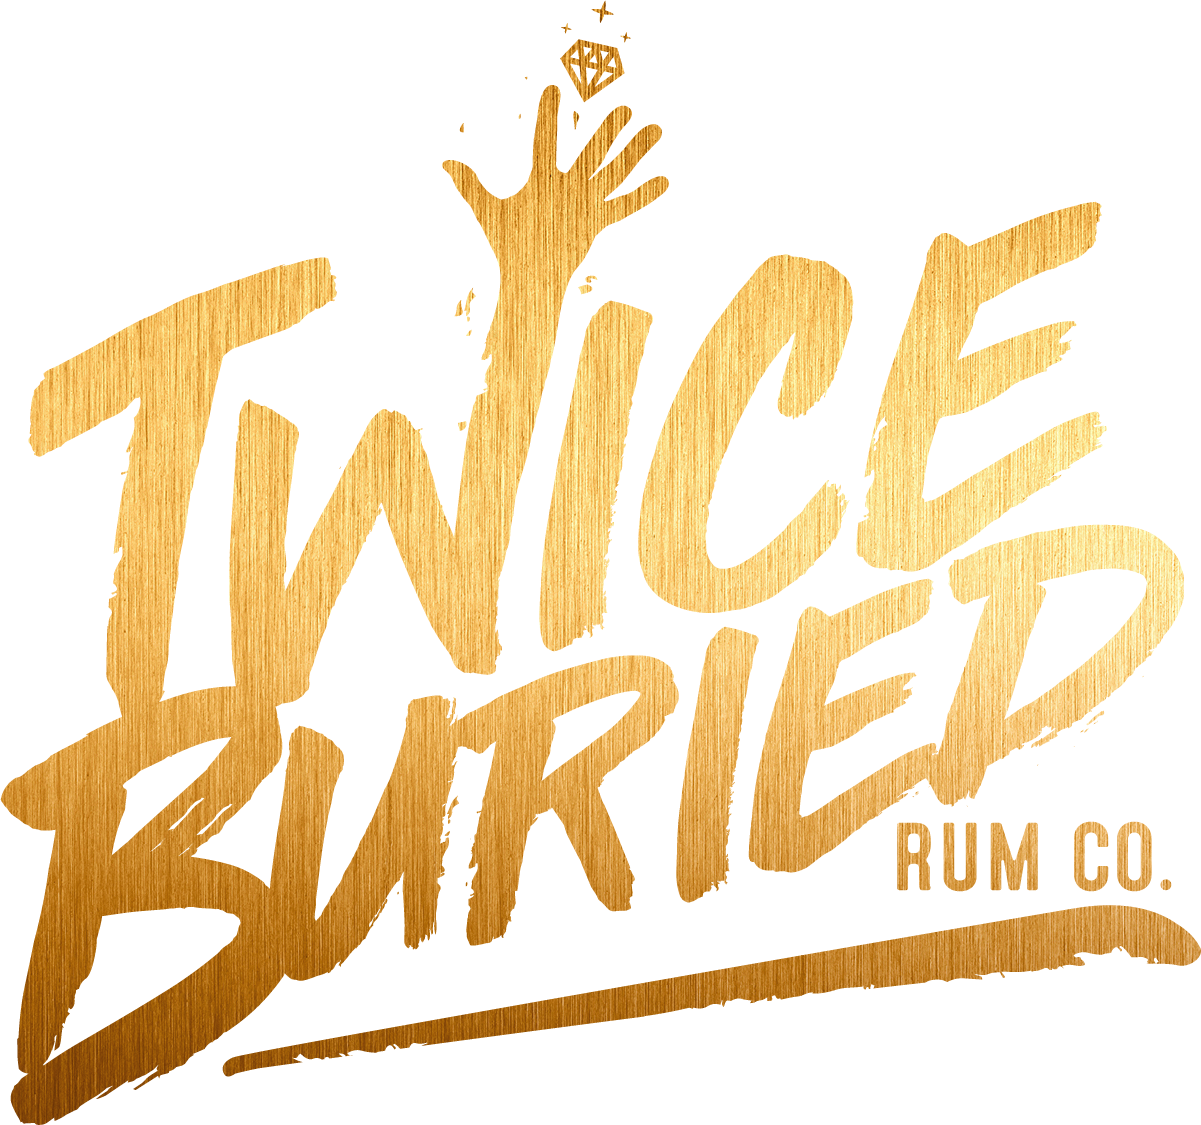 Twice Buried Rum Co.